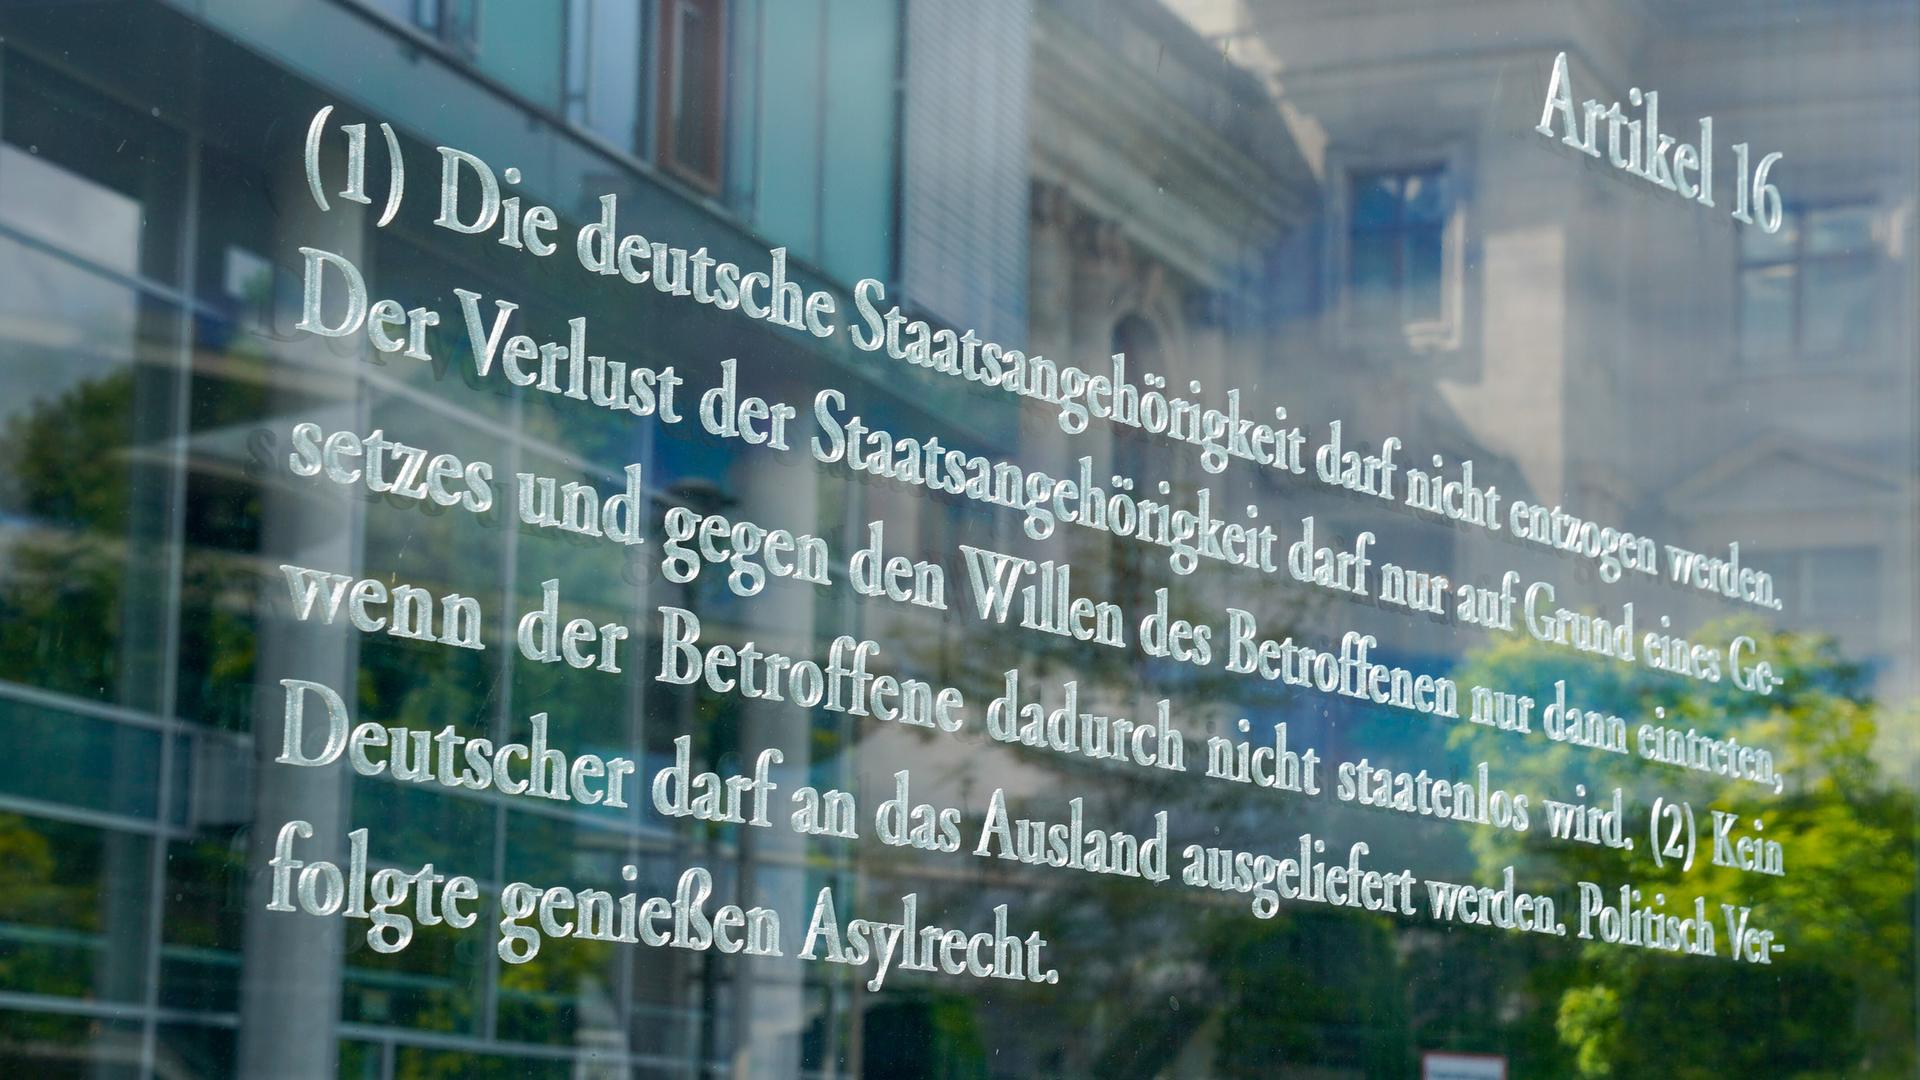 Glastafeln am Bundestag mit den Artikel des Grundgesetzes: Artikel 16: Deutsche Staatsangehörigkeit